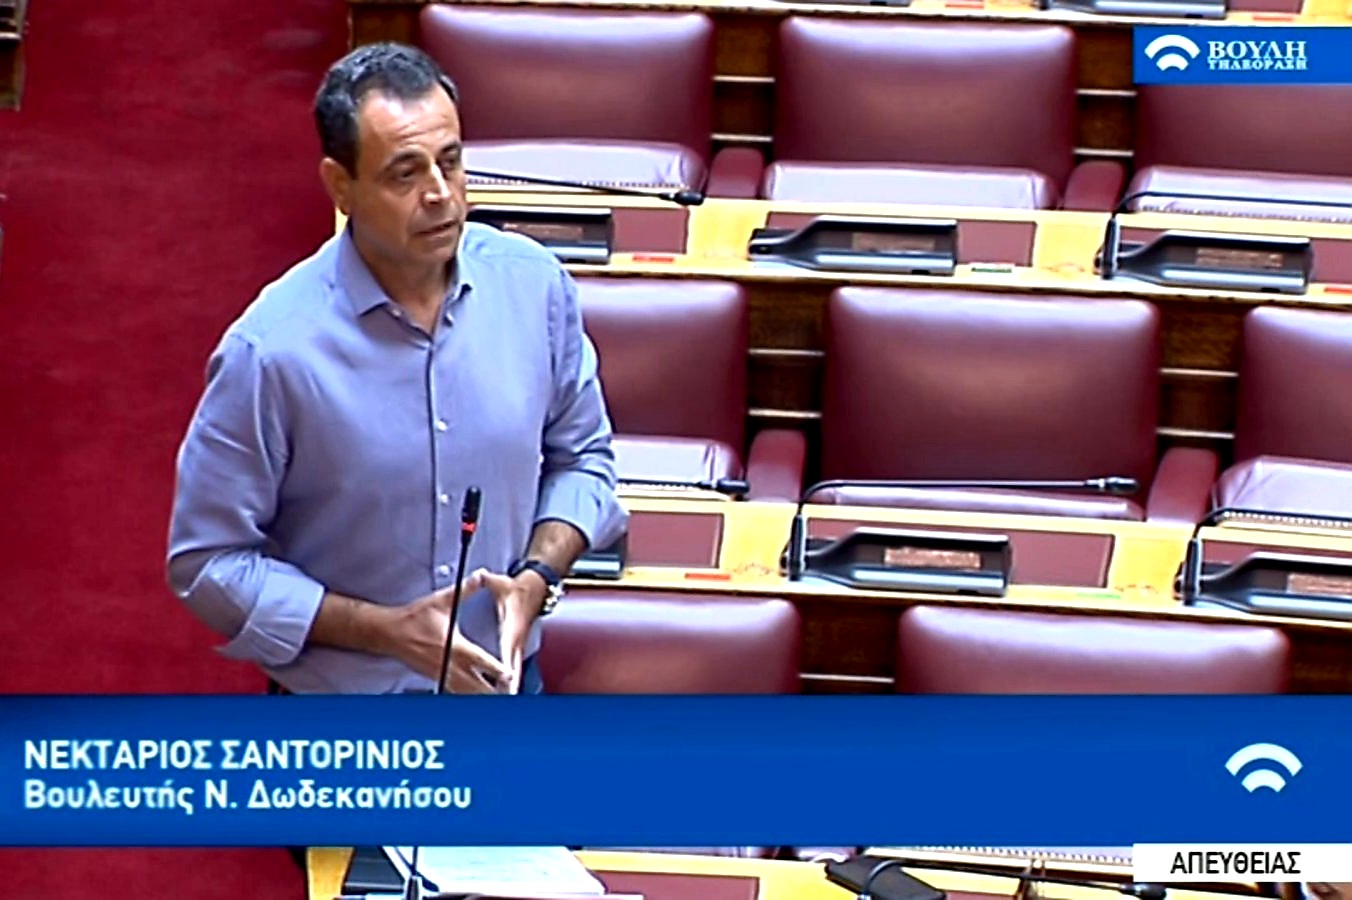 Ν. Σαντορινιός: Ο κ. Μητσοτάκης 2 φορές απέρριψε την πρόταση μας για κατάργηση του ΕΝΦΙΑ στα μικρά νησιά. Έστω και αργά αντιλήφθηκε τις ανάγκες των νησιωτών - Ηχητικό